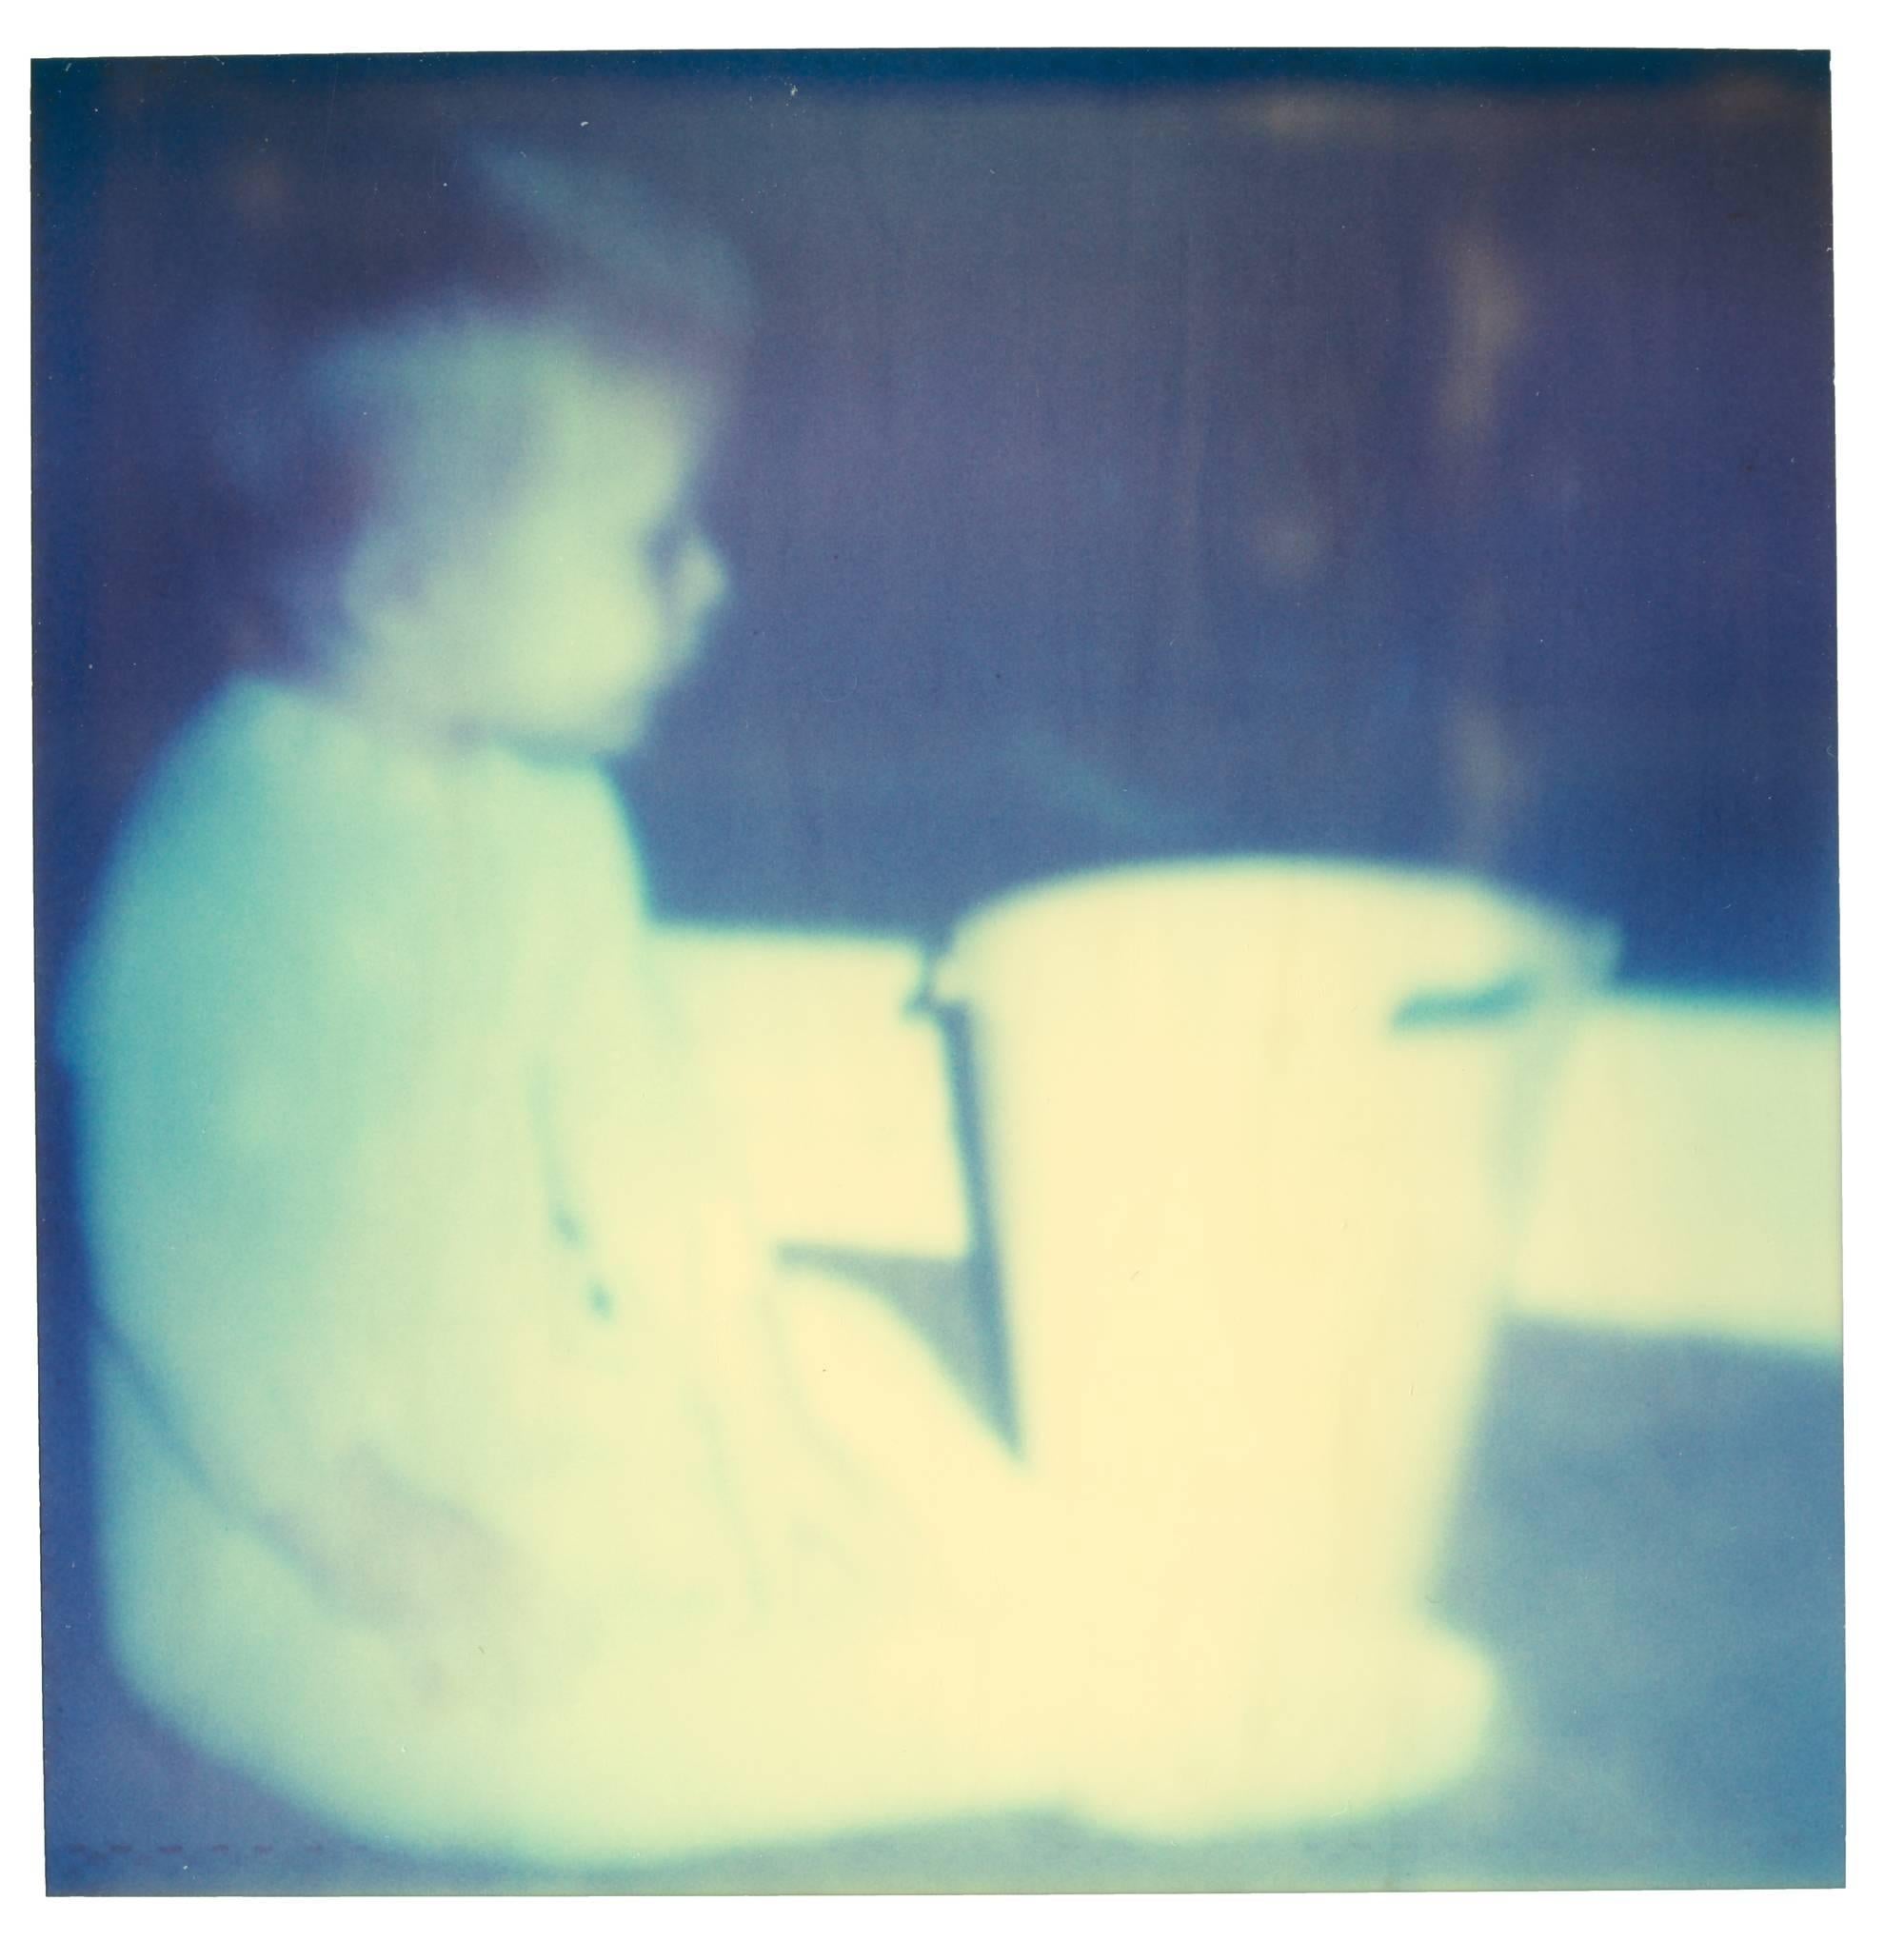 Seau en plastique blanc (Stay), de la séquence mémoire de Ryan Gosling.
2006, 85x85cm, 4 pièces, chacune 39x38.5cm, Edition 2/5, 
c-Prints analogiques, imprimés par l'artiste sur papier Fuji Archive Crystal, 
à partir d'un Polaroïd. Signé au dos